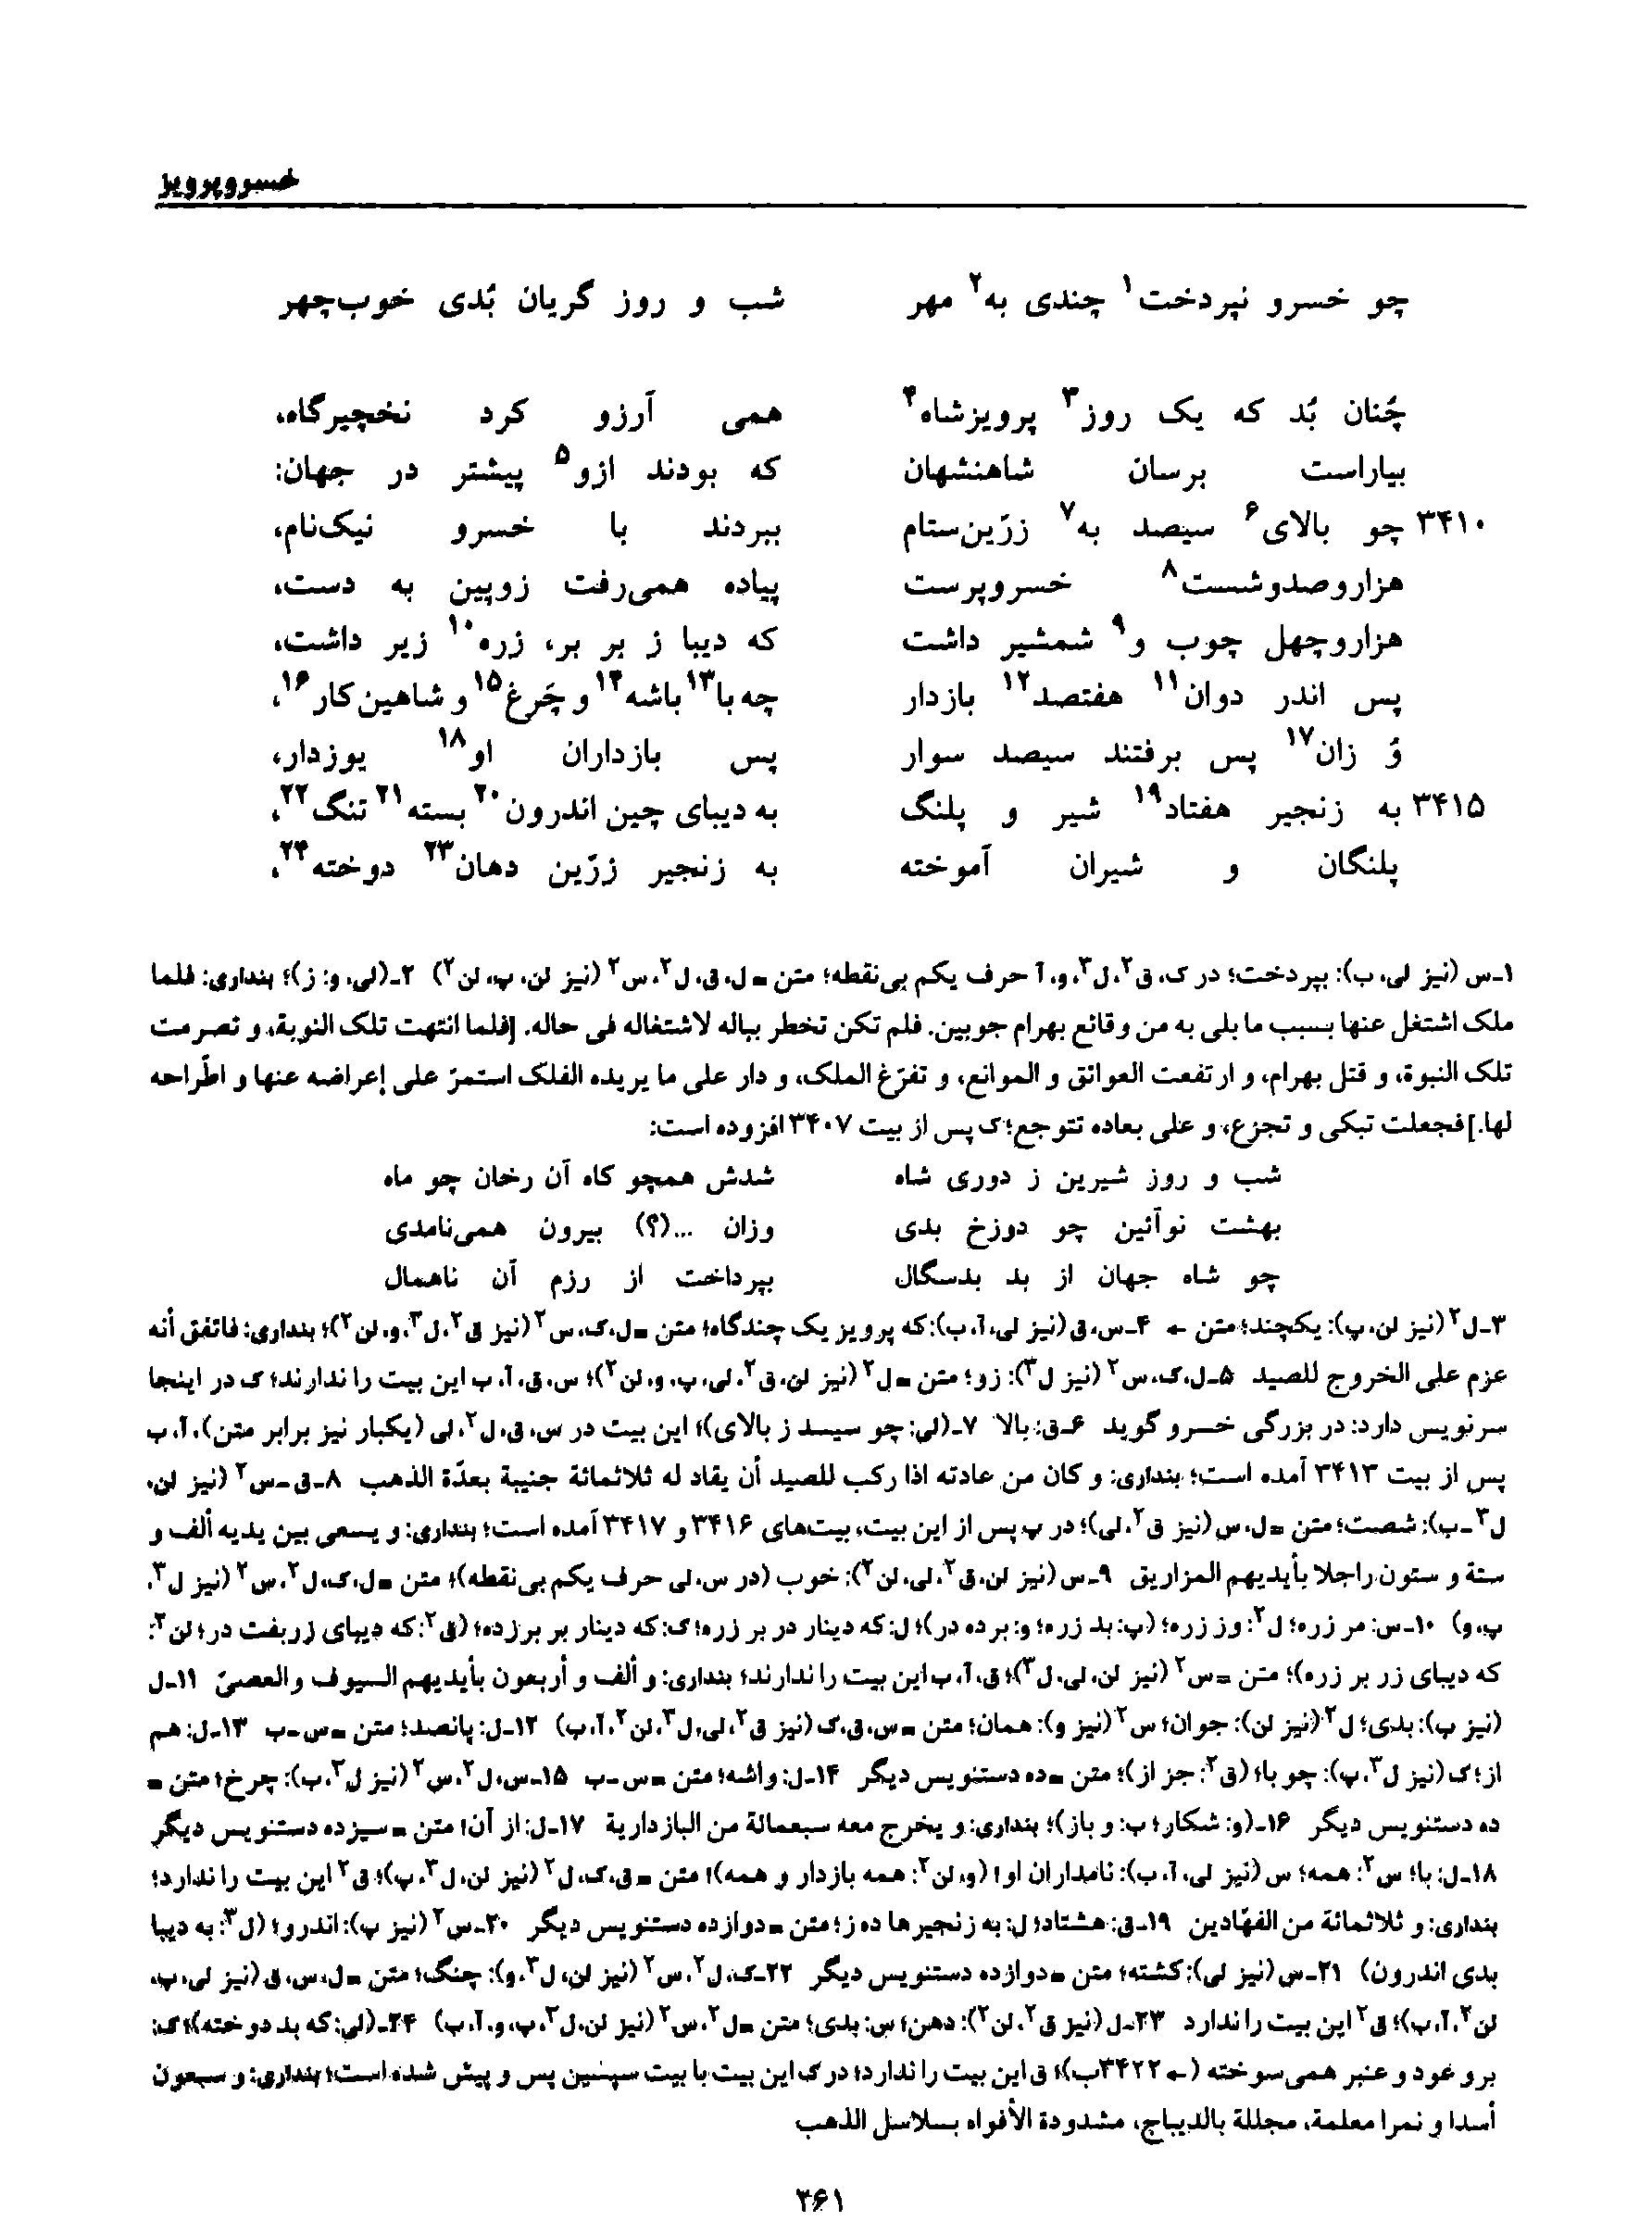 vol. 8, p. 261